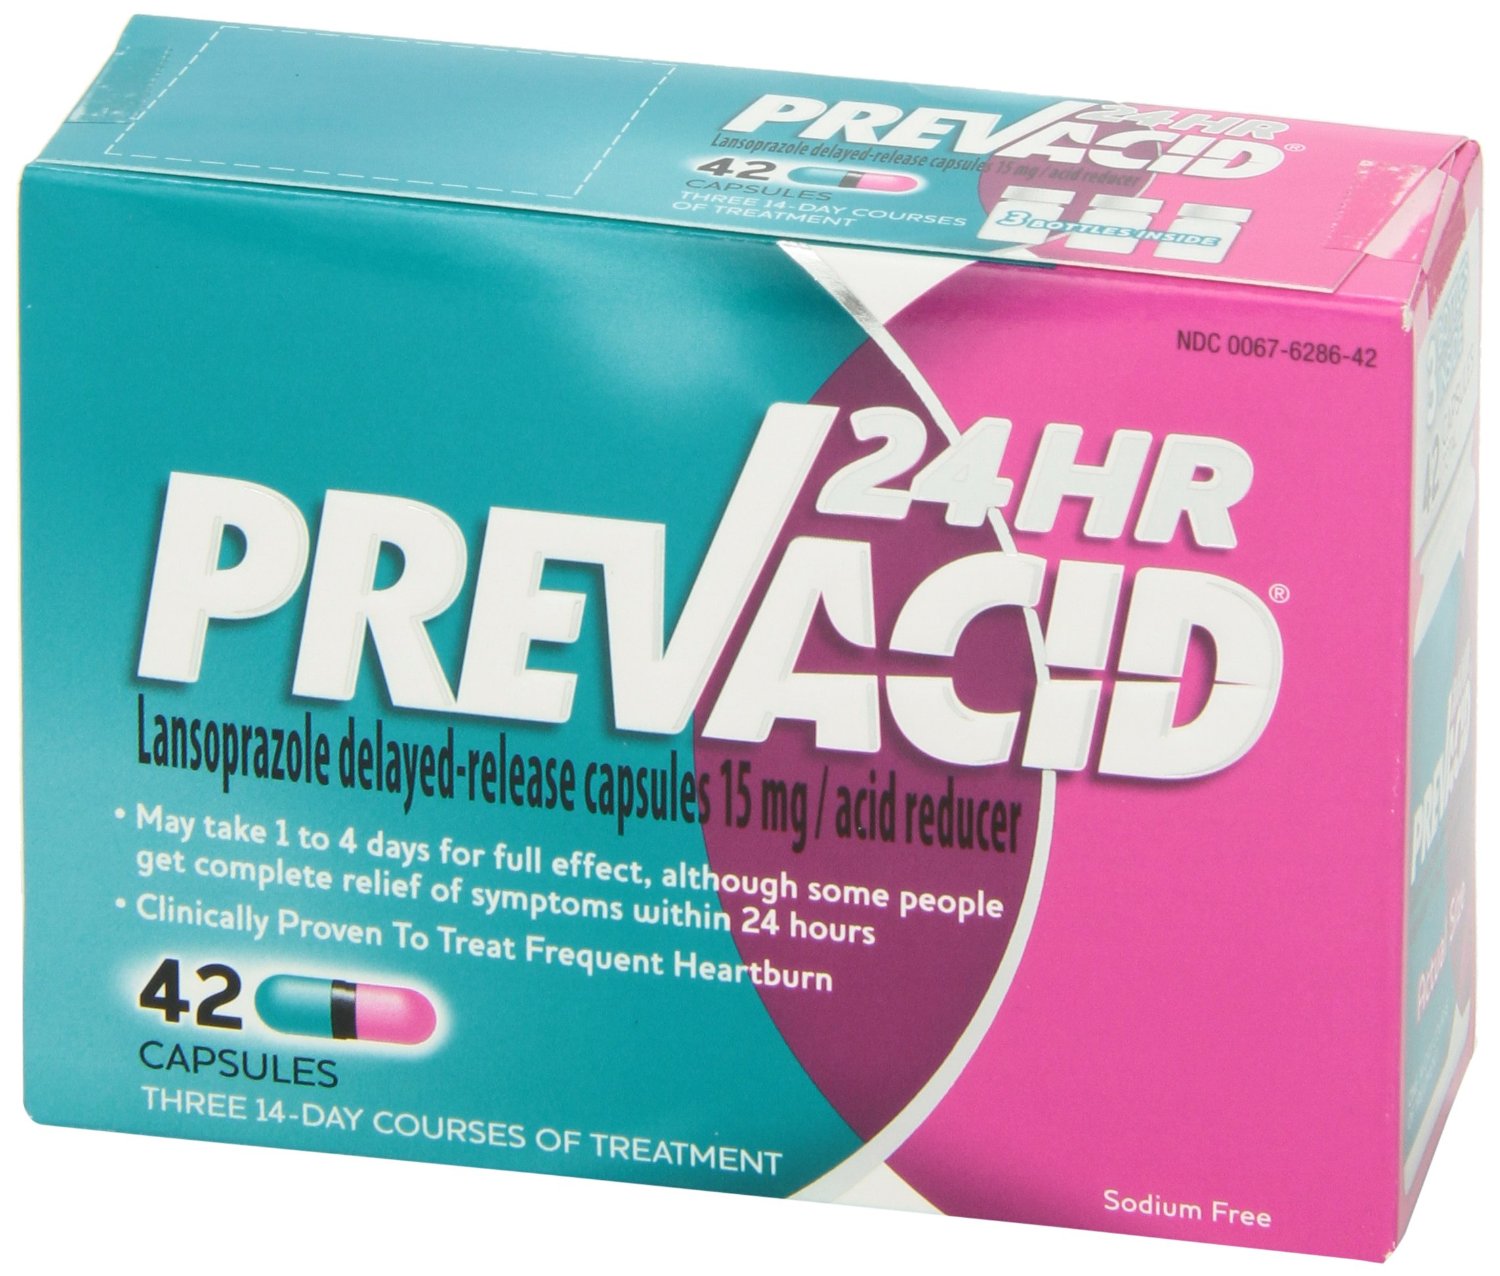 Prevacid OTC 24HR - Ryan Pharmacy